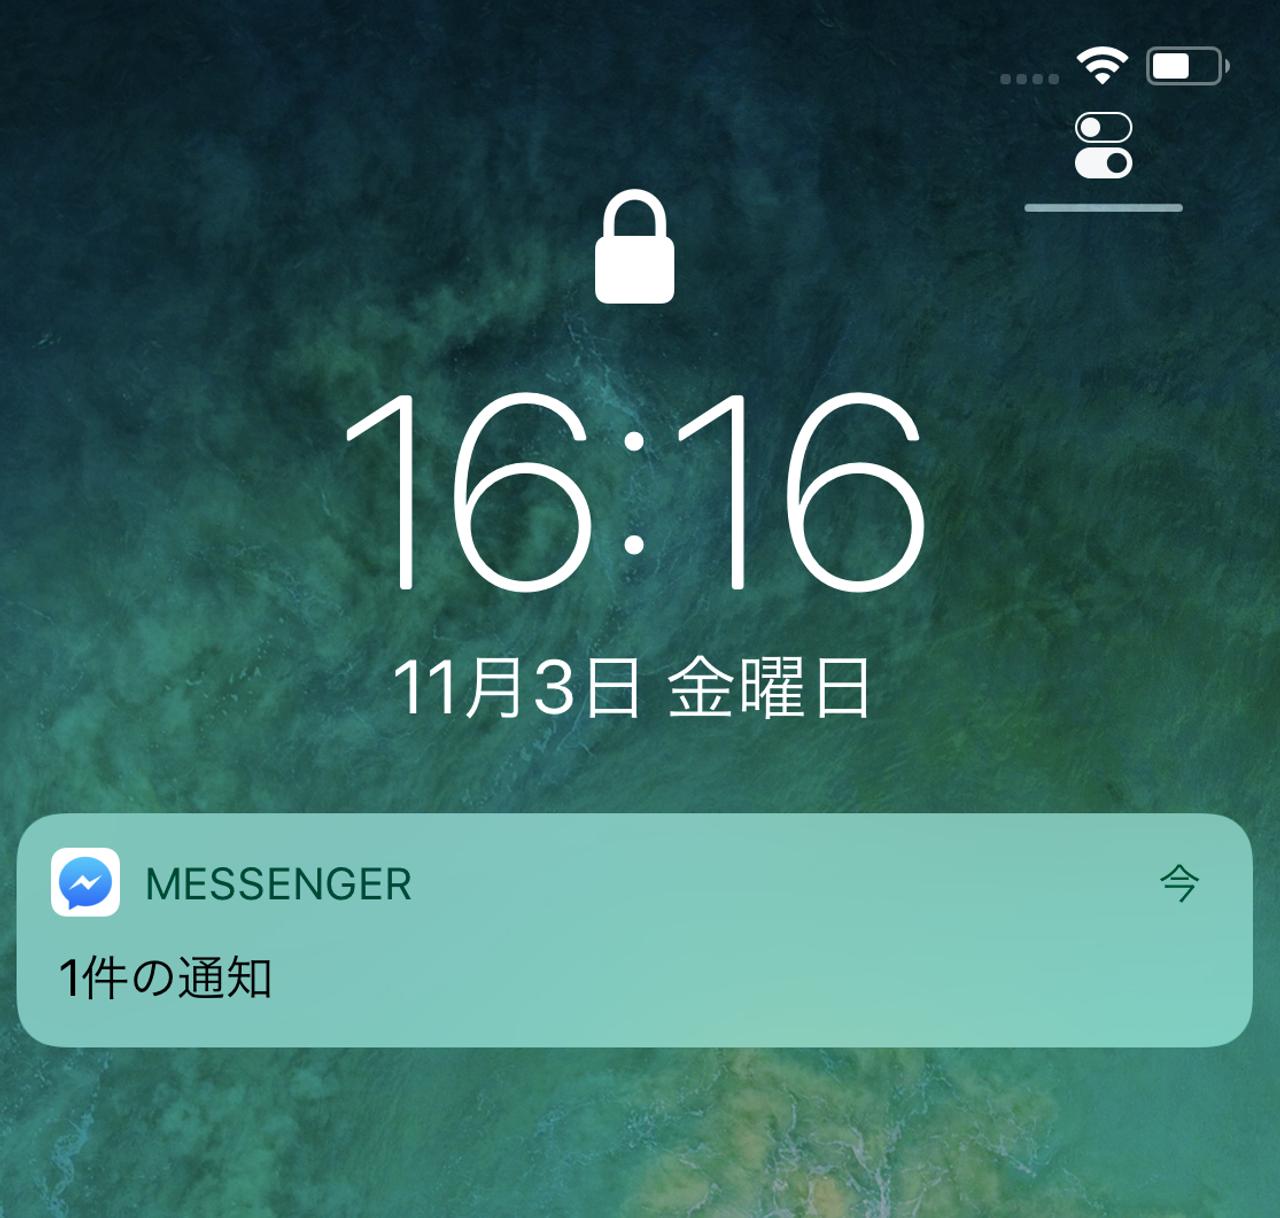 iPhone Xのロック画面に表示されるメッセージを持ち主にしか見えなくする機能が便利